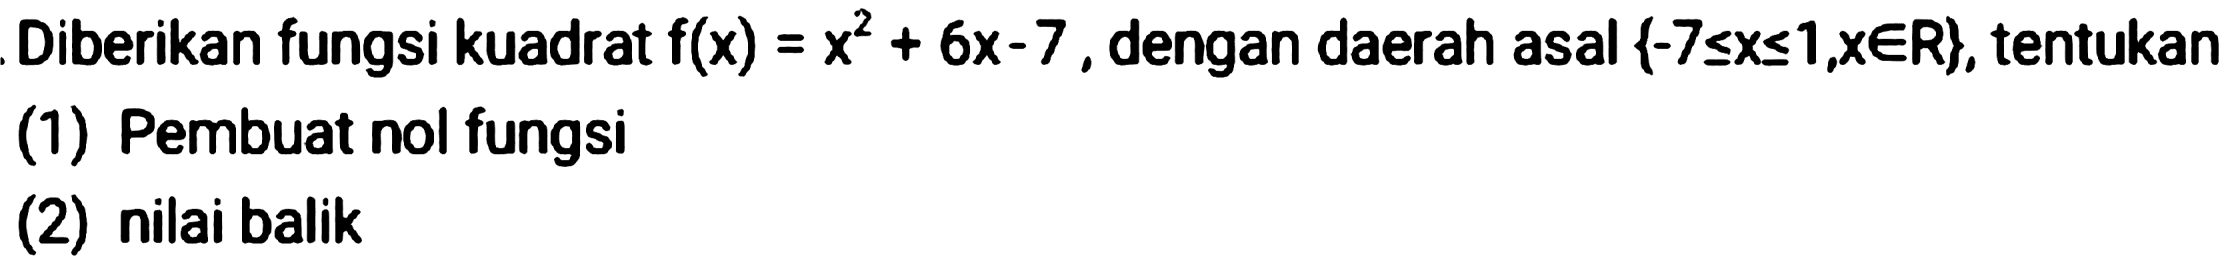 Diberikan fungsi kuadrat  f(x)=x^(2)+6 x-7 , dengan daerah asal  {-7 <= x <= 1, x in R} , tentukan
(1) Pembuat nol fungsi
(2) nilai balik